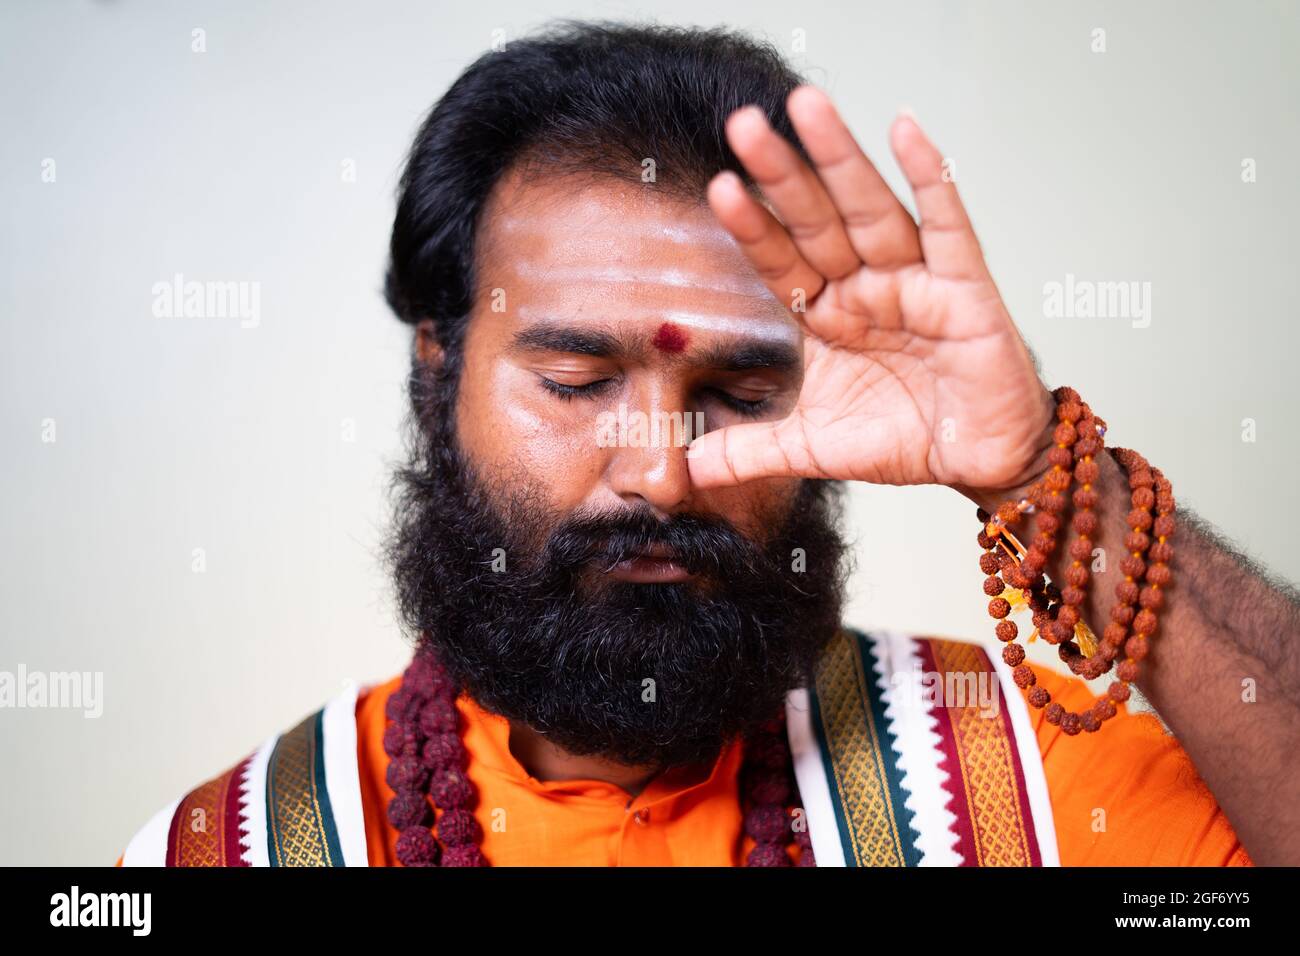 Close up head shot of Indian holy yoga guru or god man doing nostril breathing or nadi shodhana pranayama exercise or yoga. Stock Photo